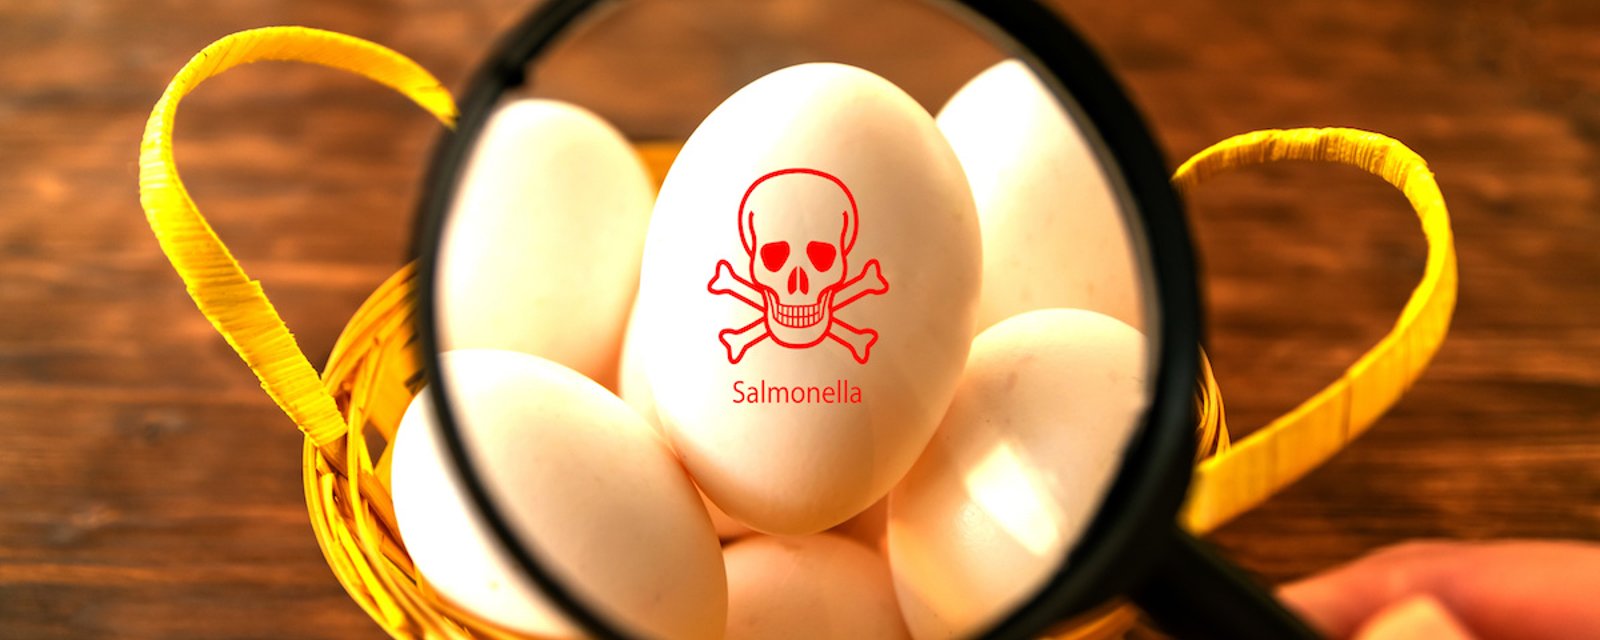 5 conseils pour prévenir la salmonellose